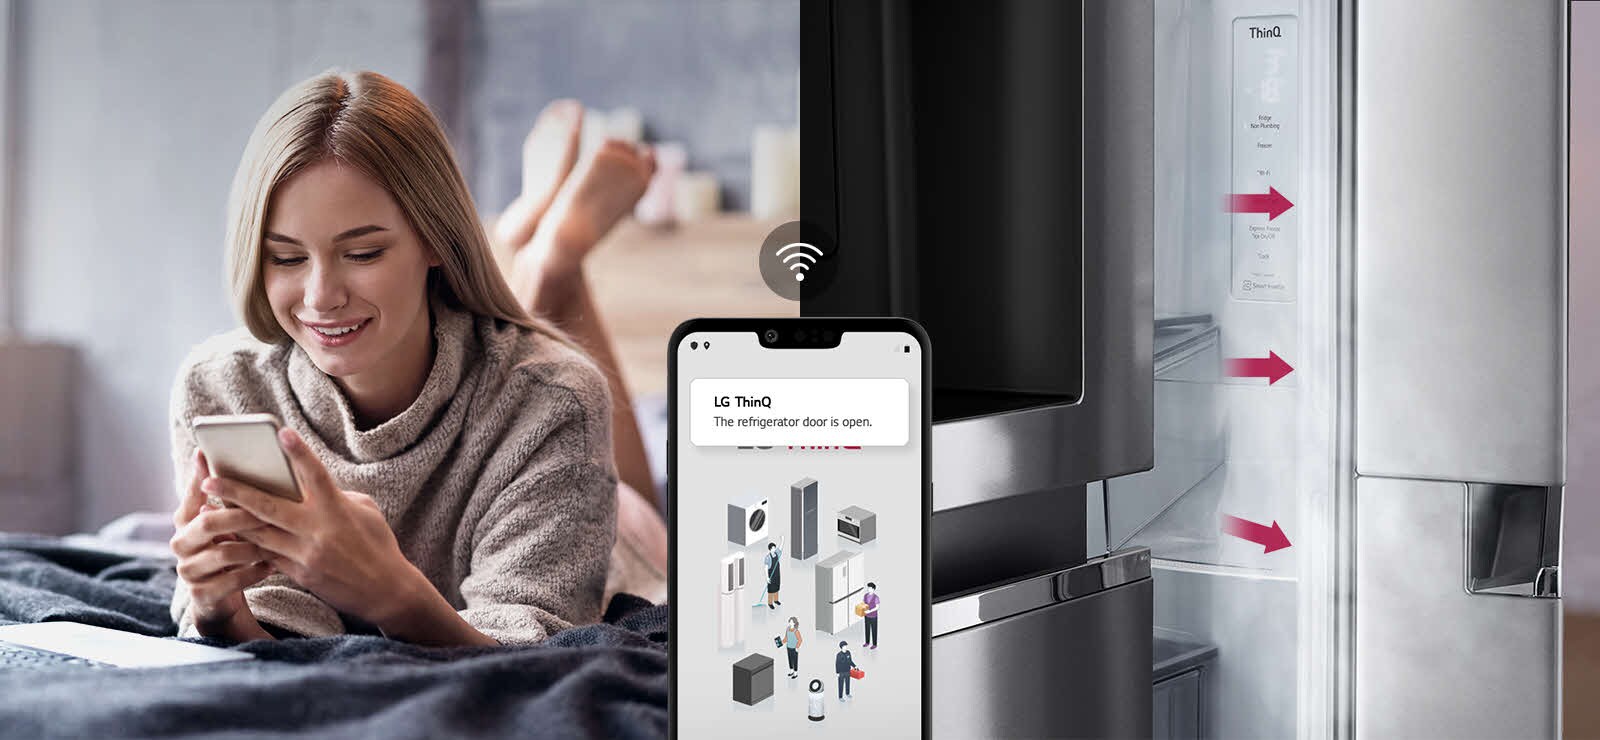 Na jednom obrázku je žena, ktorá relaxuje na posteli a pozerá sa na obrazovku telefónu. Na druhom obrázku vidno, že zostali otvorené dvere chladničky. V popredí týchto dvoch obrázkov sa nachádza obrazovka telefónu, na ktorej sa zobrazujú upozornenia aplikácie LG ThinQ, a ikona Wi-Fi nad telefónom.